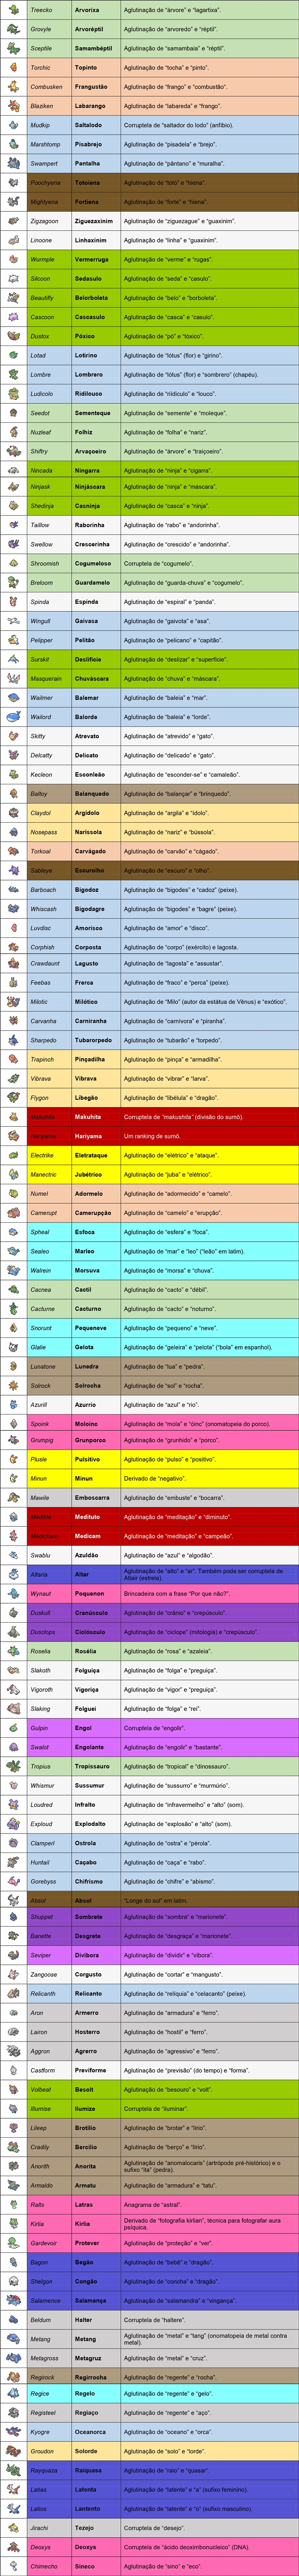 Pronúncia dos nomes dos Pokémon! Nomes que eu falei errado e nomes que eu  falei certo na Pokedex 